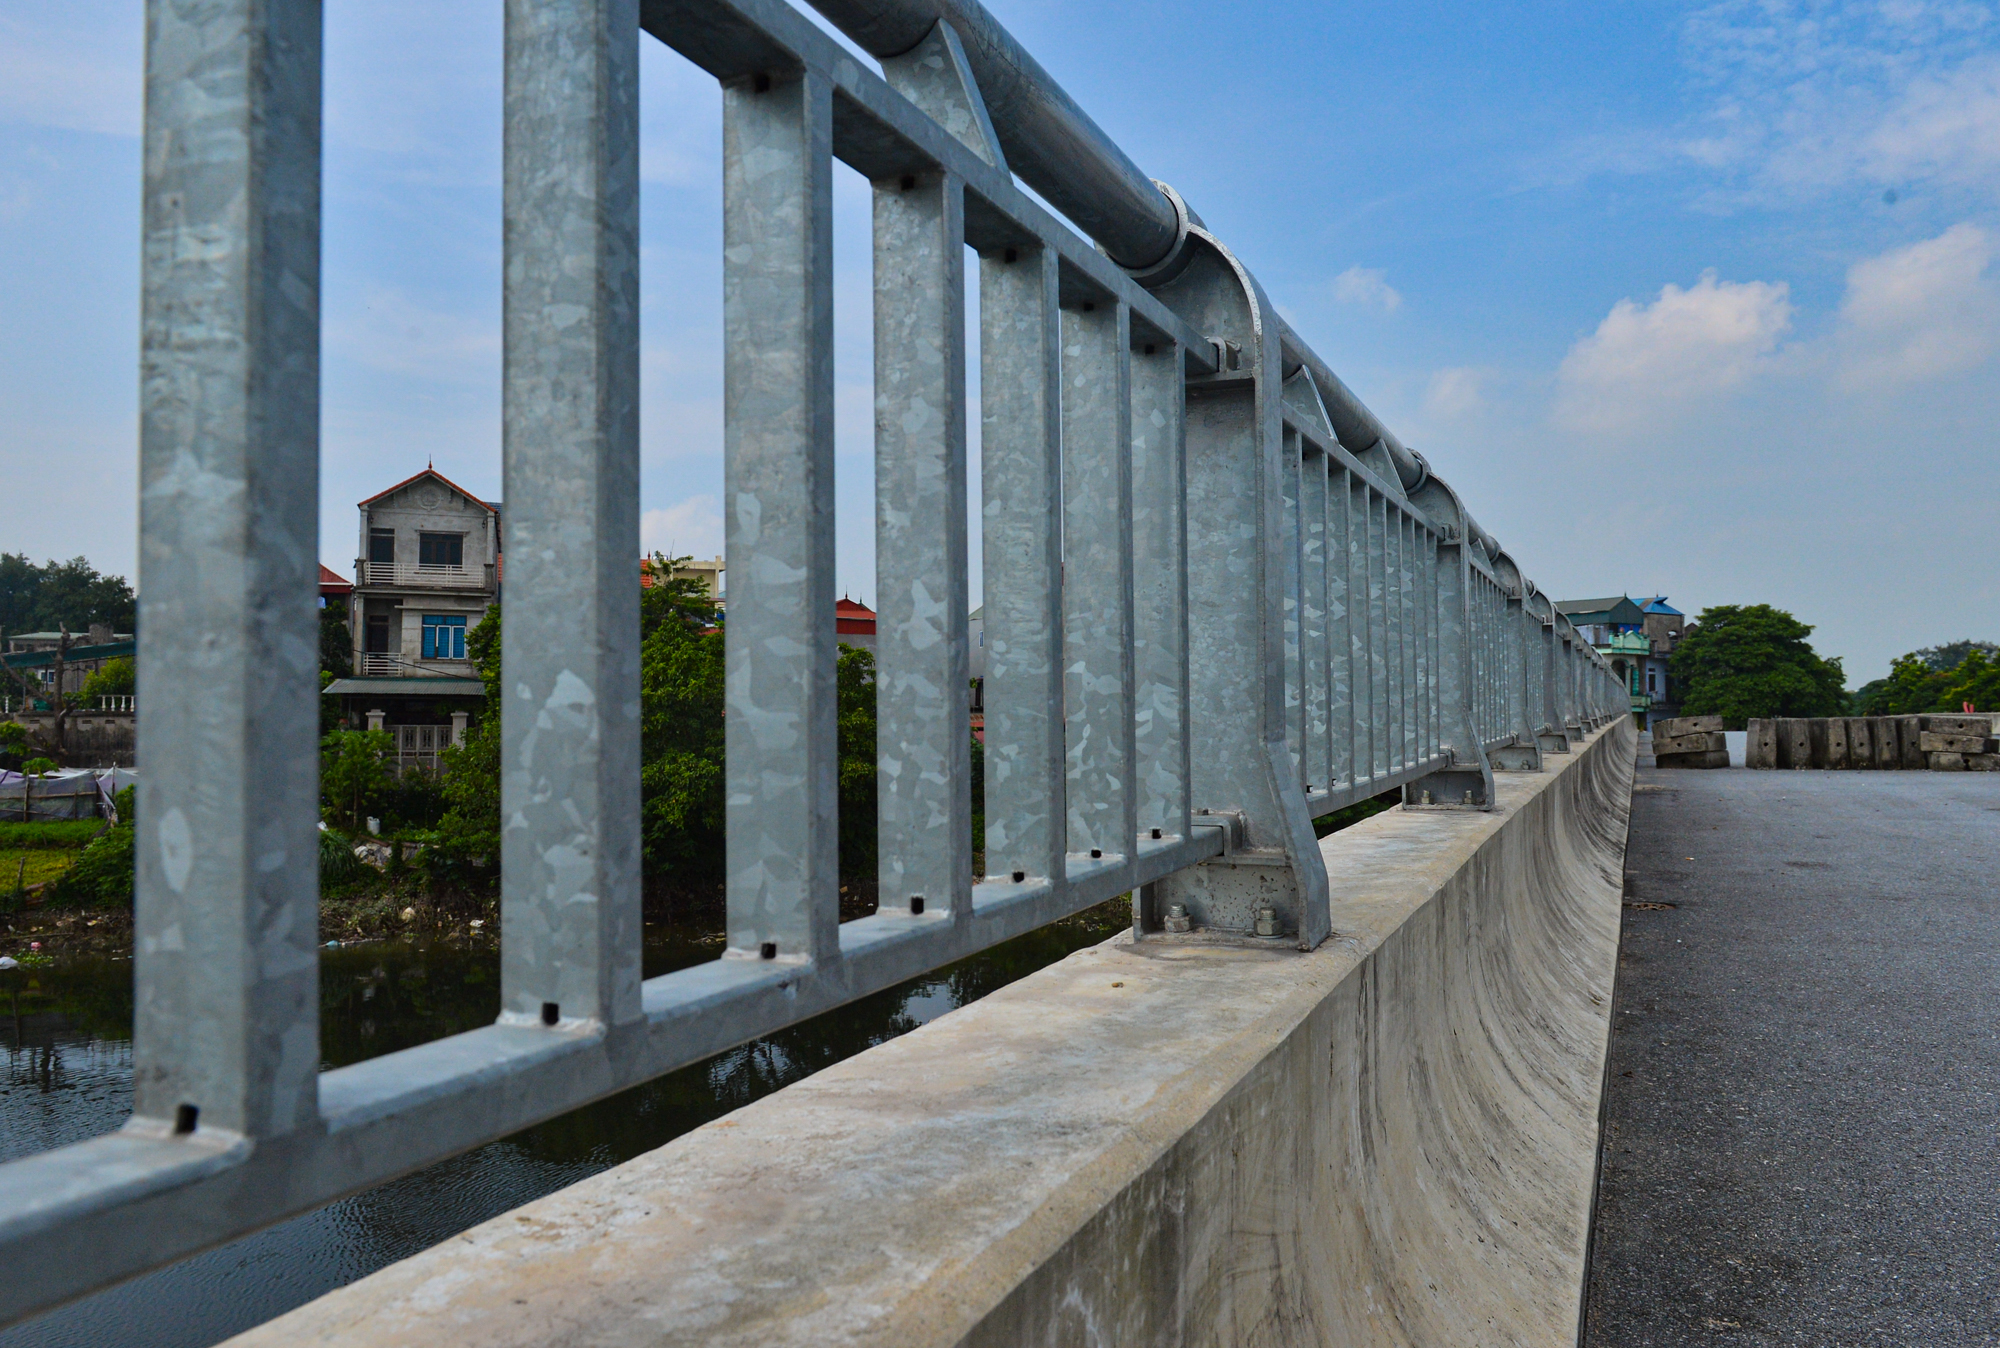 Cây cầu hơn 115 tỷ ở Hà Nội sắp hoàn thành, vì sao bị bỏ không gần 2 năm nay? - Ảnh 10.